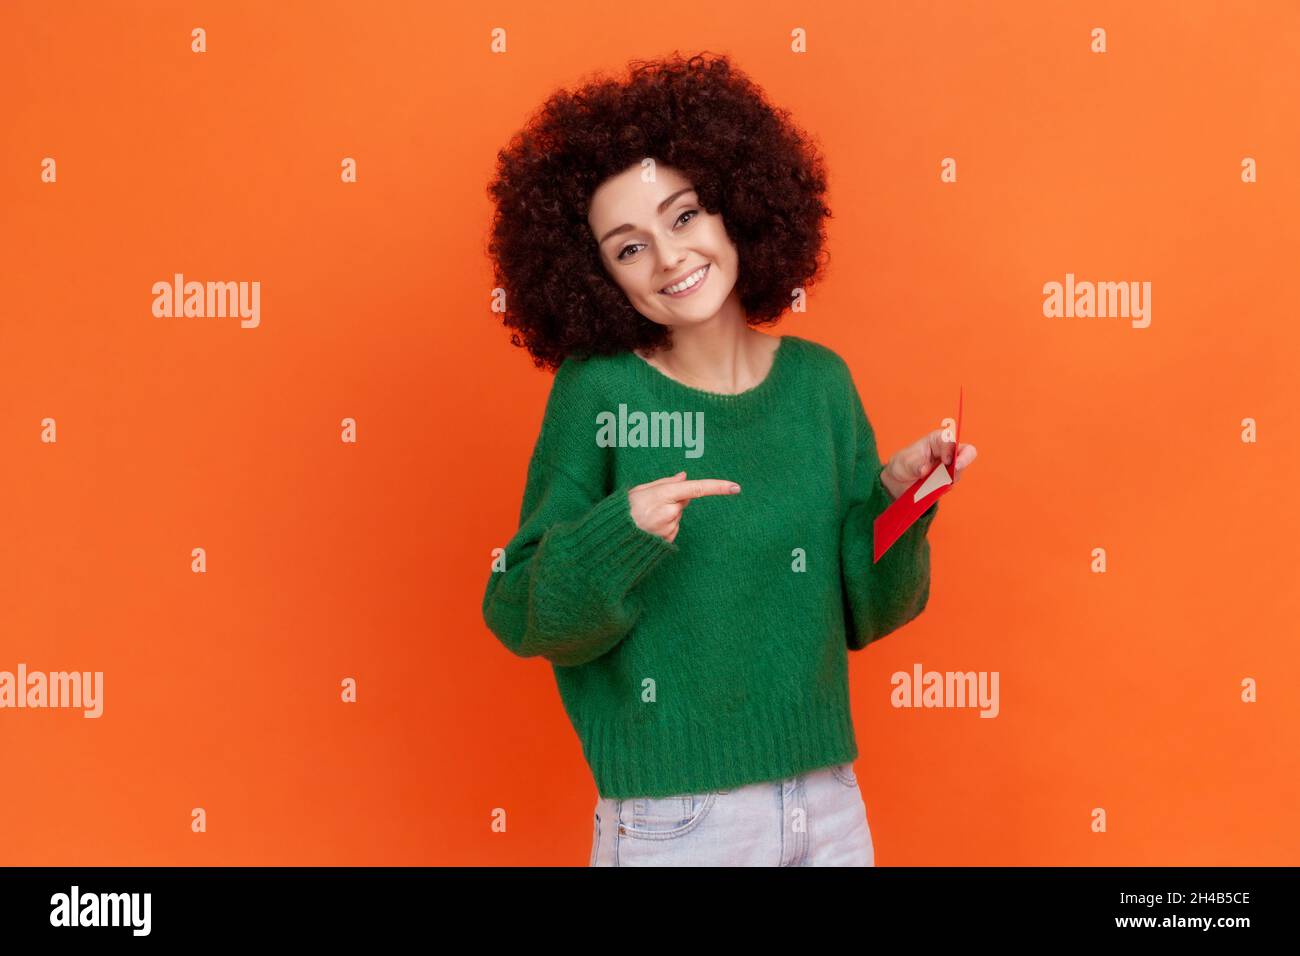 Donna sorridente con acconciatura afrofroche indossa maglione verde casual tenendo e indicando la busta rossa in mano, lettera romantica. Studio interno girato isolato su sfondo arancione. Foto Stock